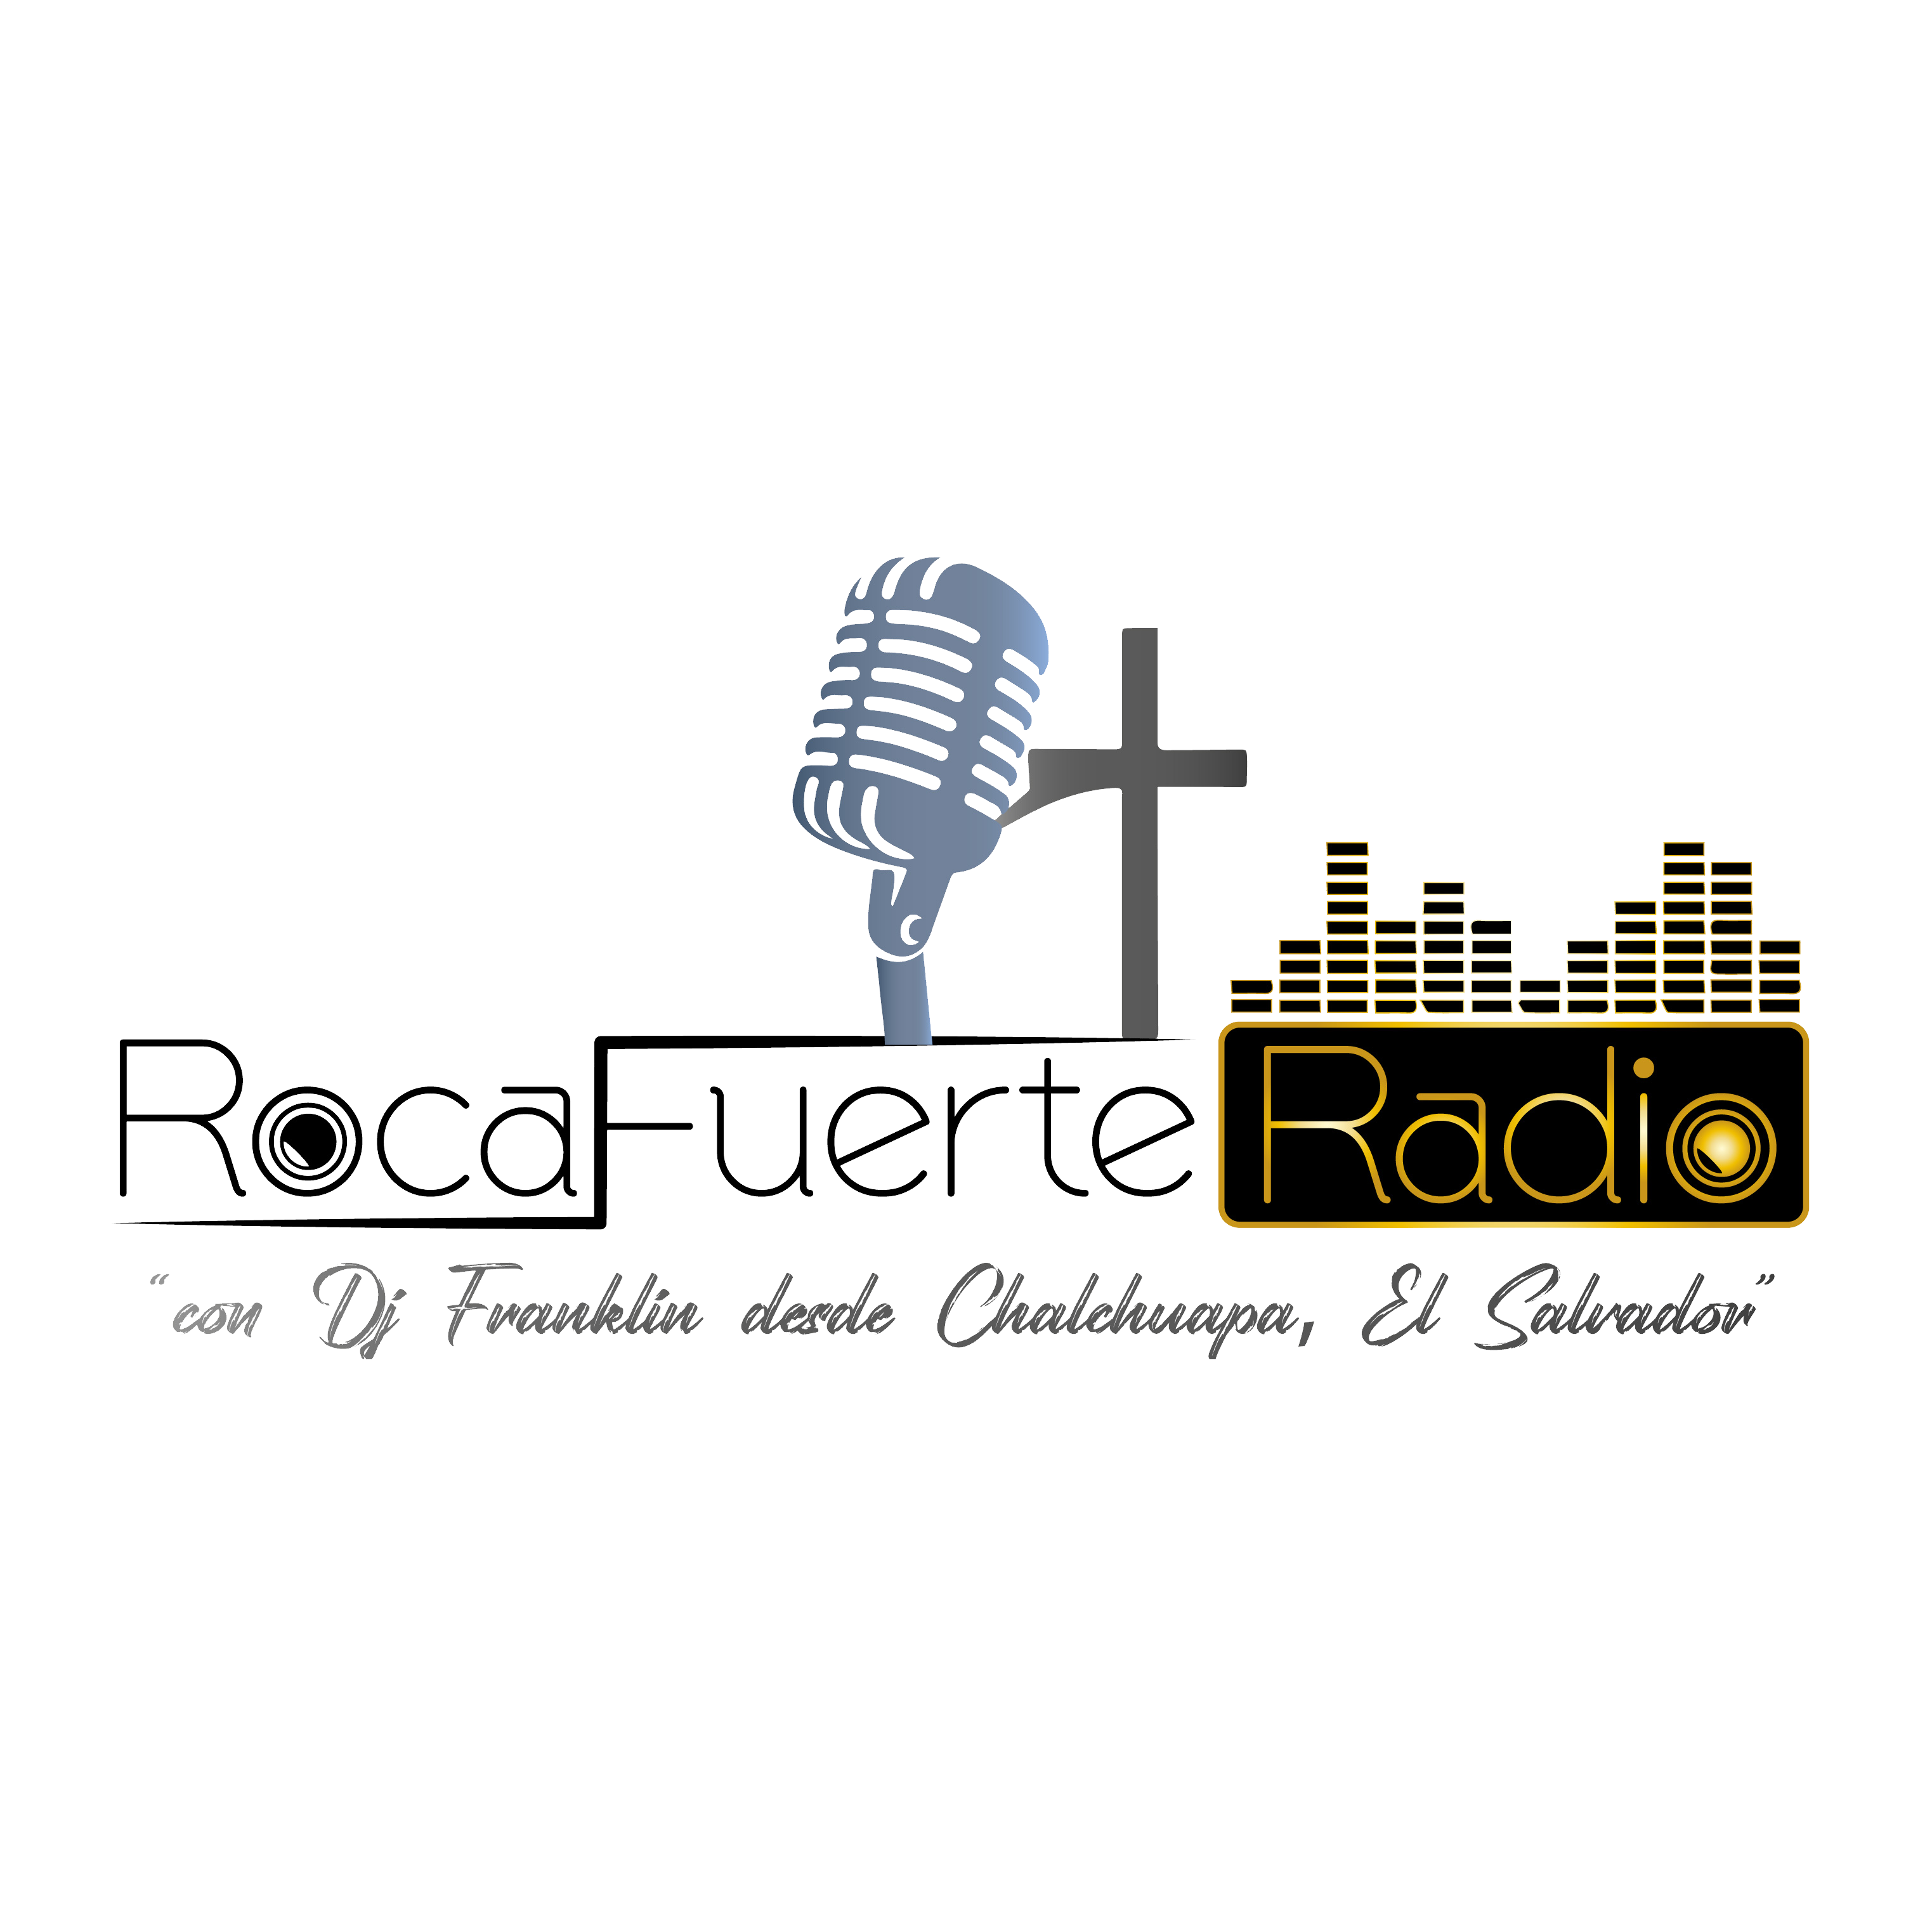 Roca Fuerte Radio El Salvador